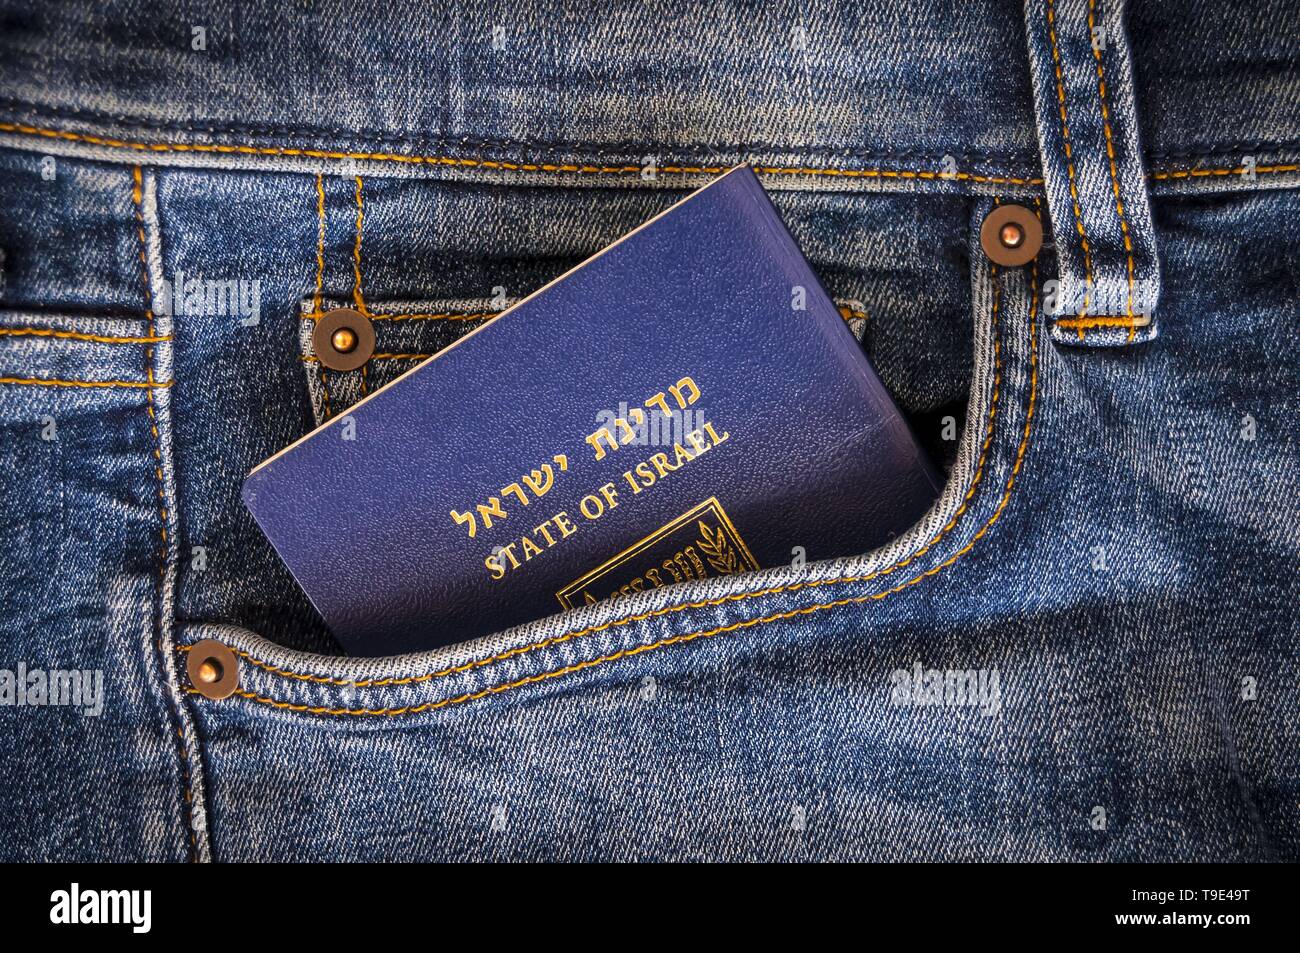 Un pasaporte azul del Estado de Israel, sobresaliendo de un bolsillo de los pantalones vaqueros azules. Los viajes de turismo israelí, Israel ciudadanía, biométricos israelí Foto de stock